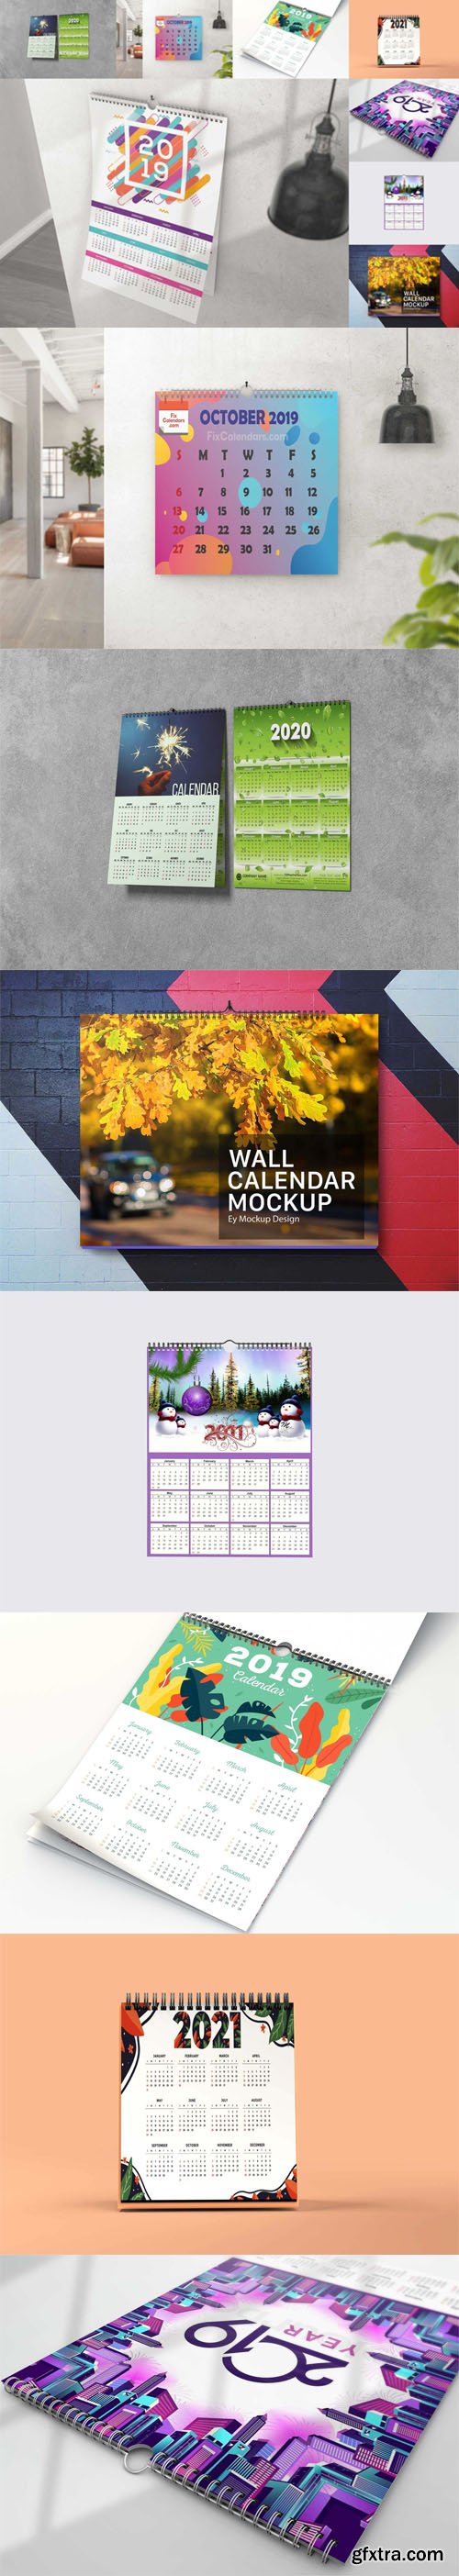 8 Calendars PSD Mockups Templates